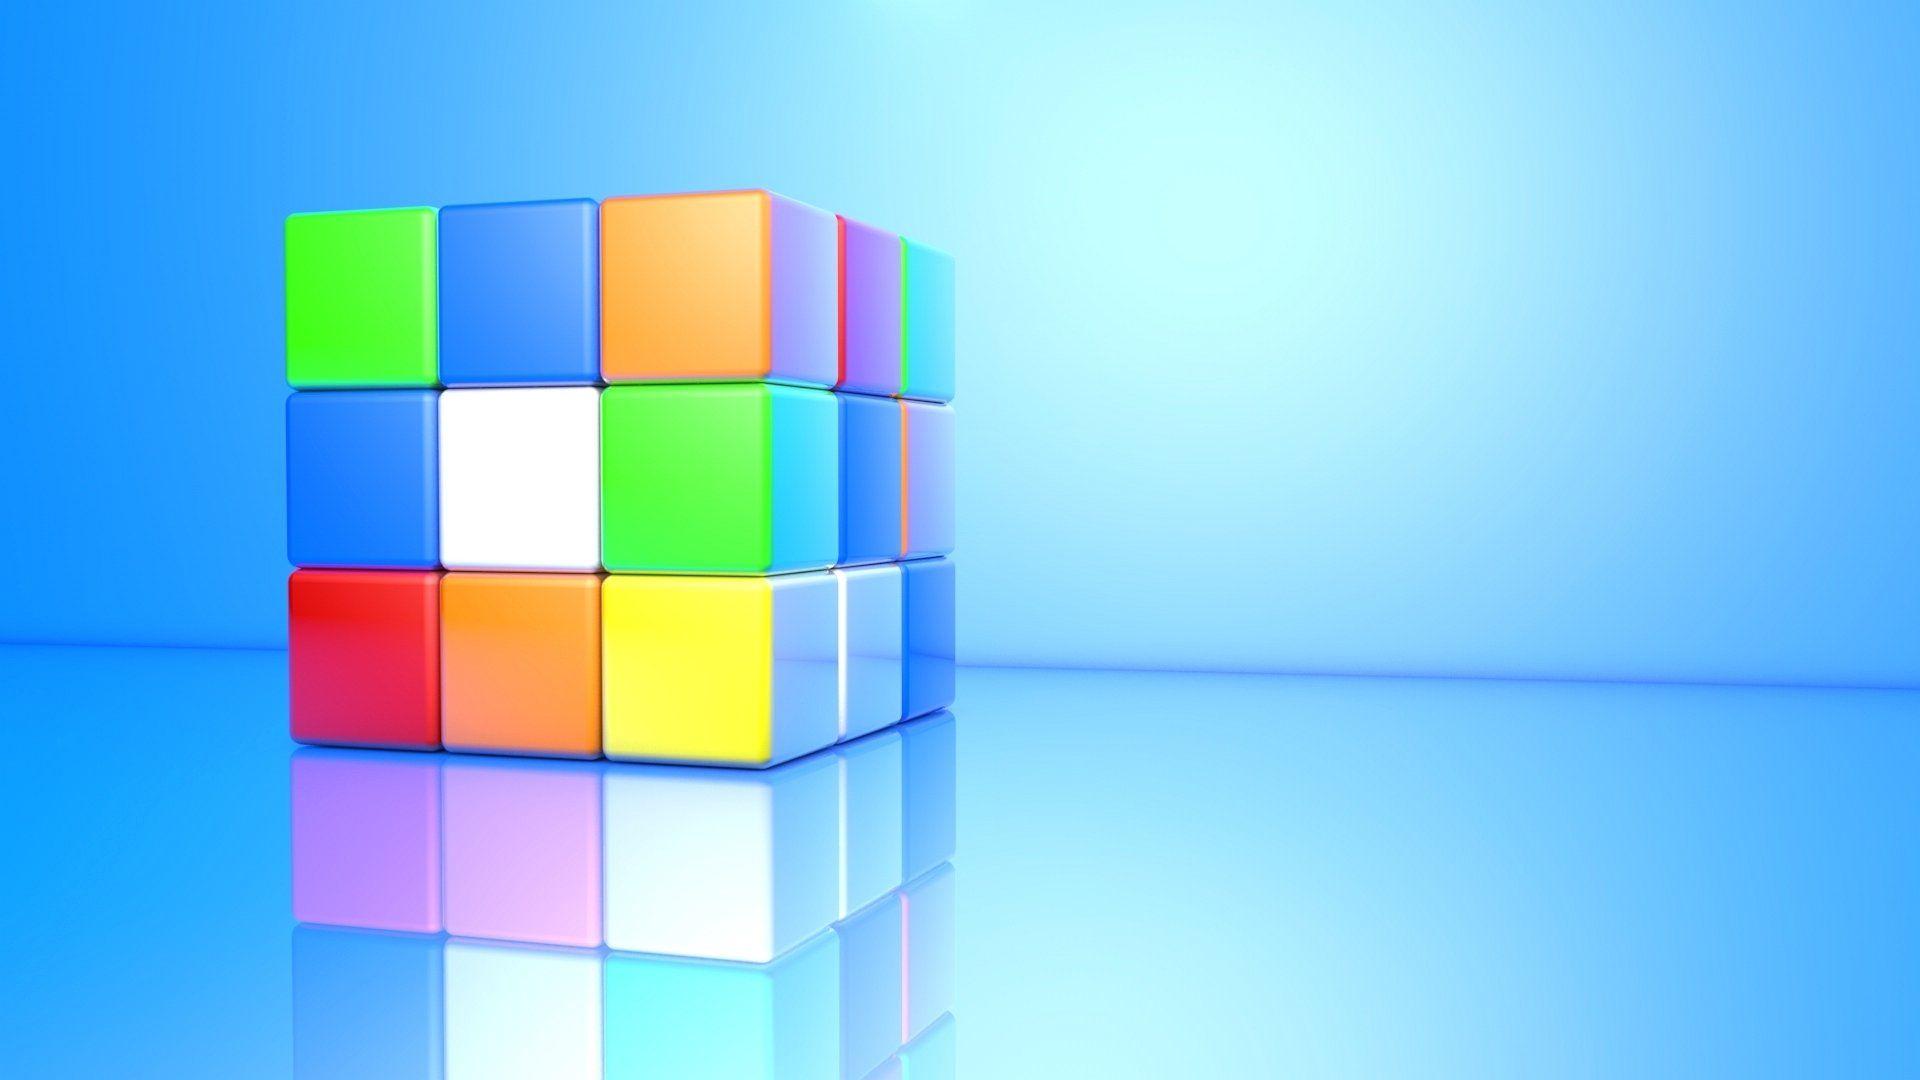 Wallpaper Rubik Cube 3D 1920 X 1080 Full HD x 1080